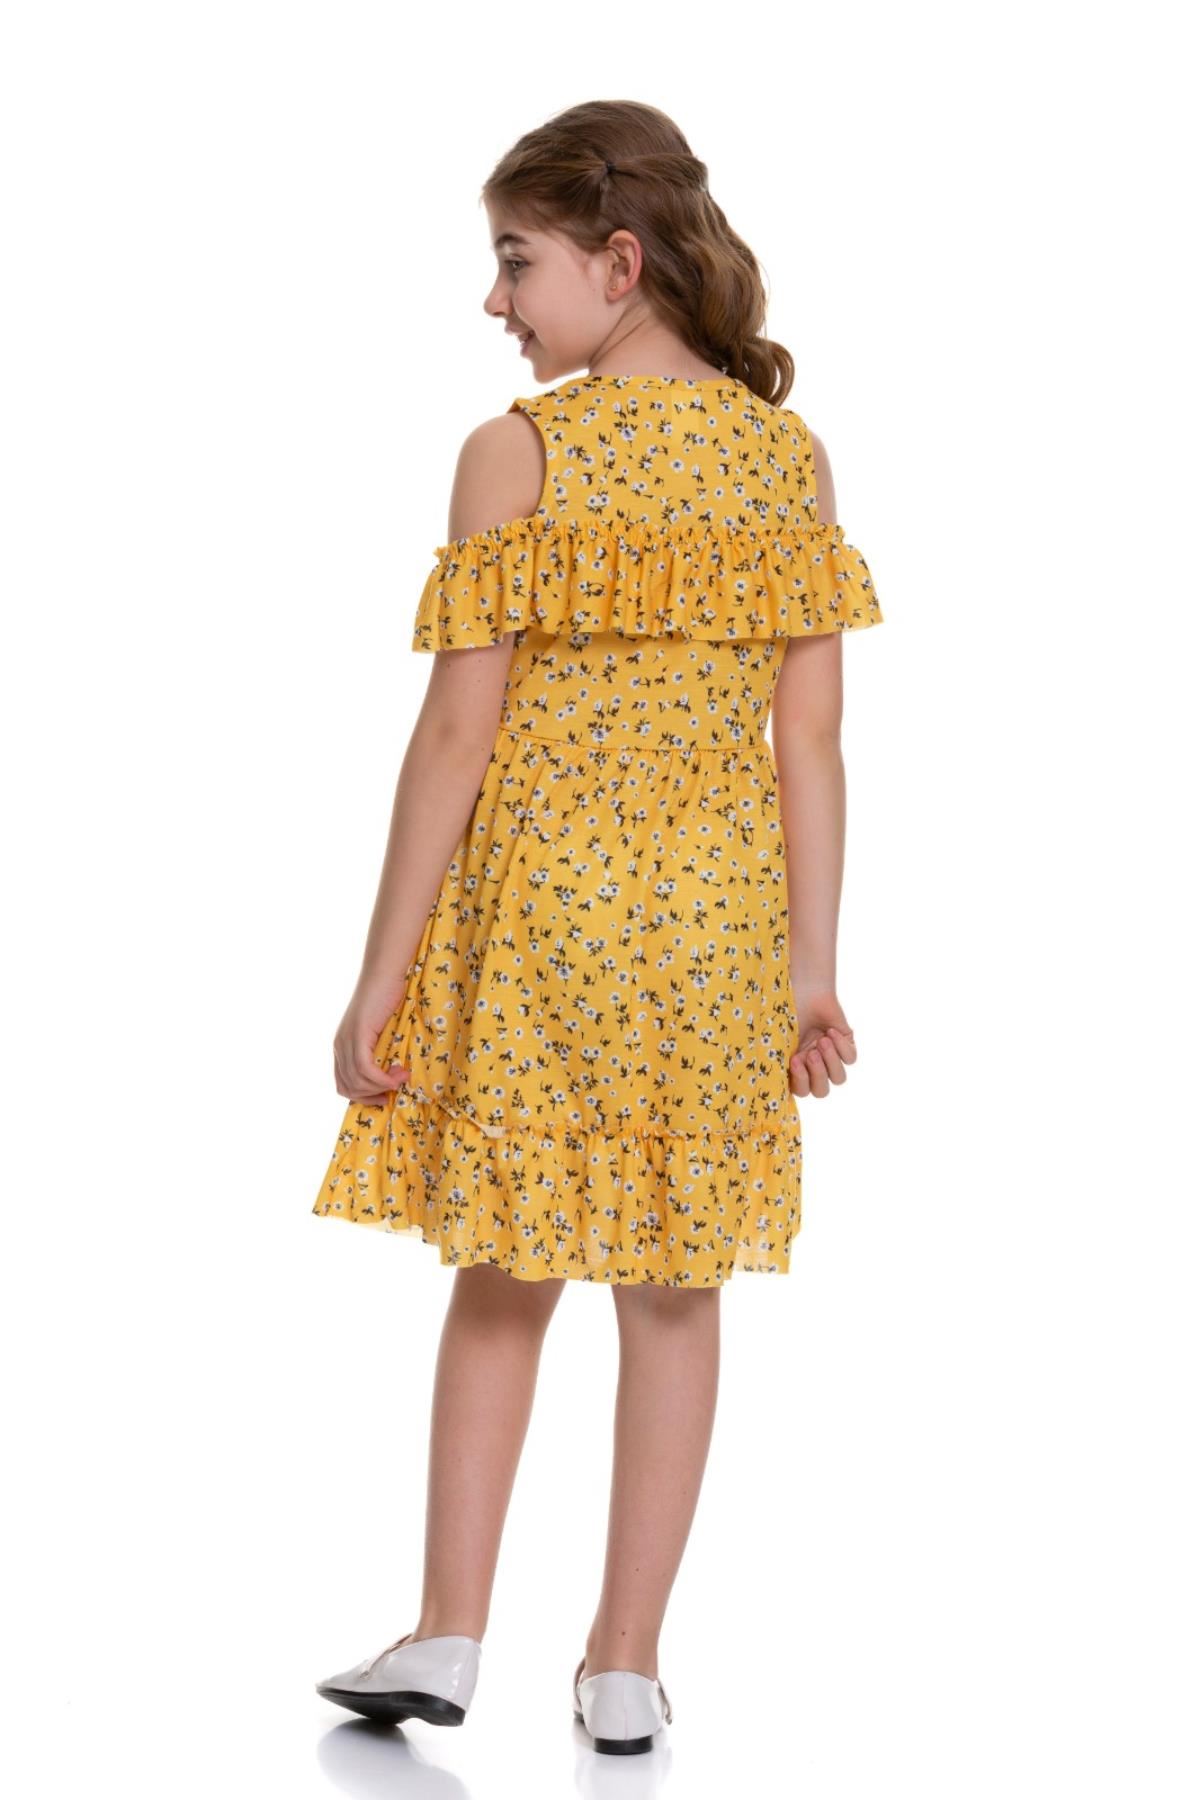 Göğsü Fırfırlı Desenli Kız Çocuk Elbise